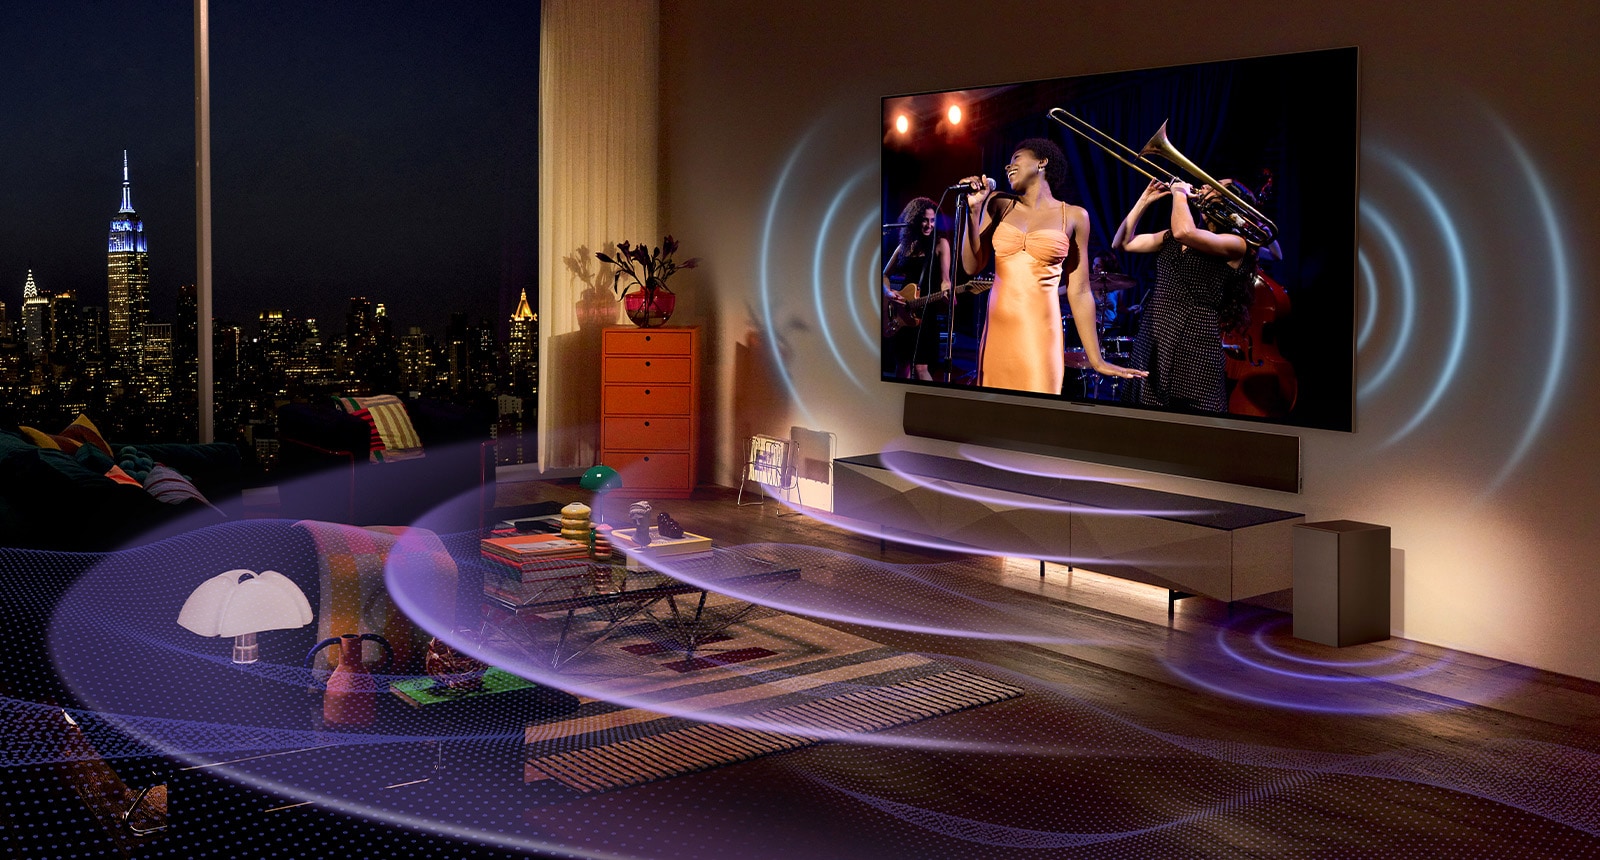 正在播放音乐会的LG OLED电视。空间中展现了描绘电视声音的蓝色弧线和表示条形音箱声音的紫色弧线。